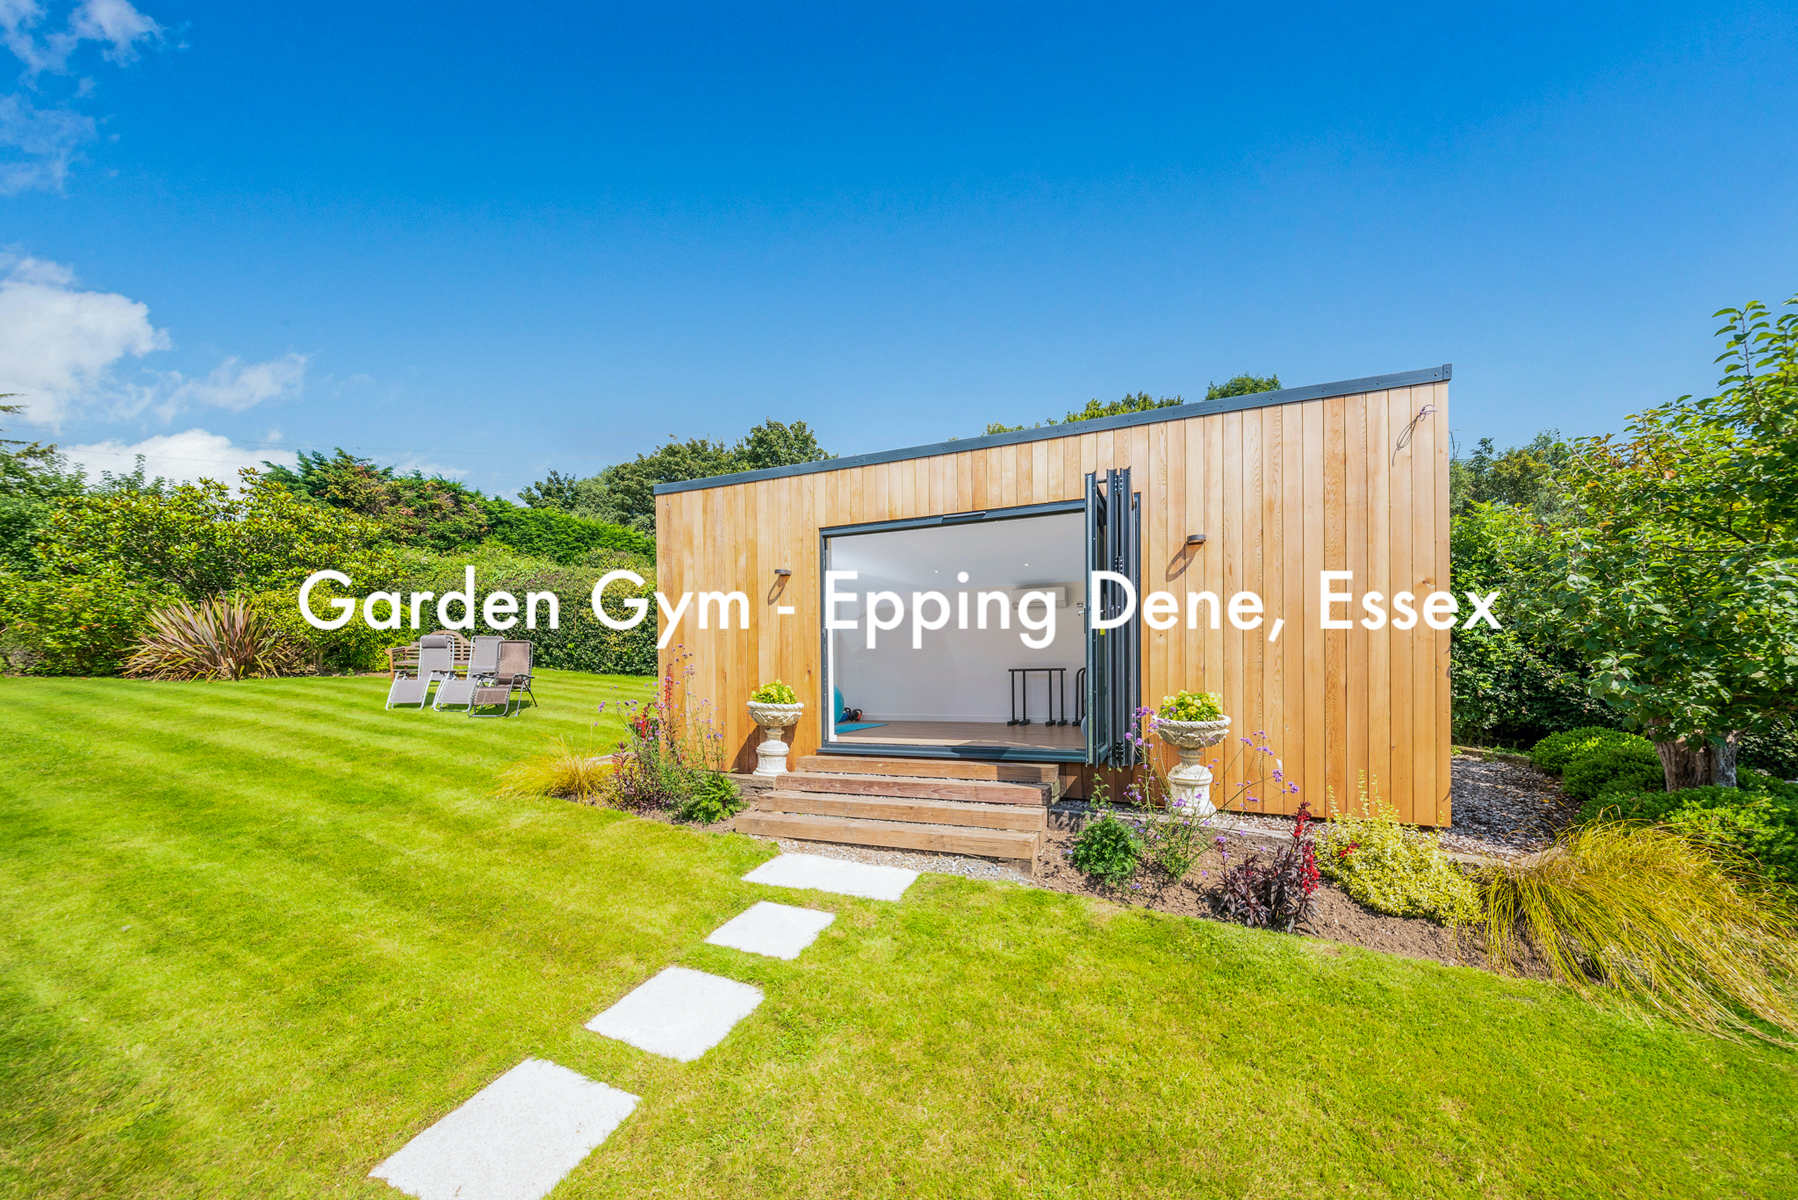 Garden room gym in Essex